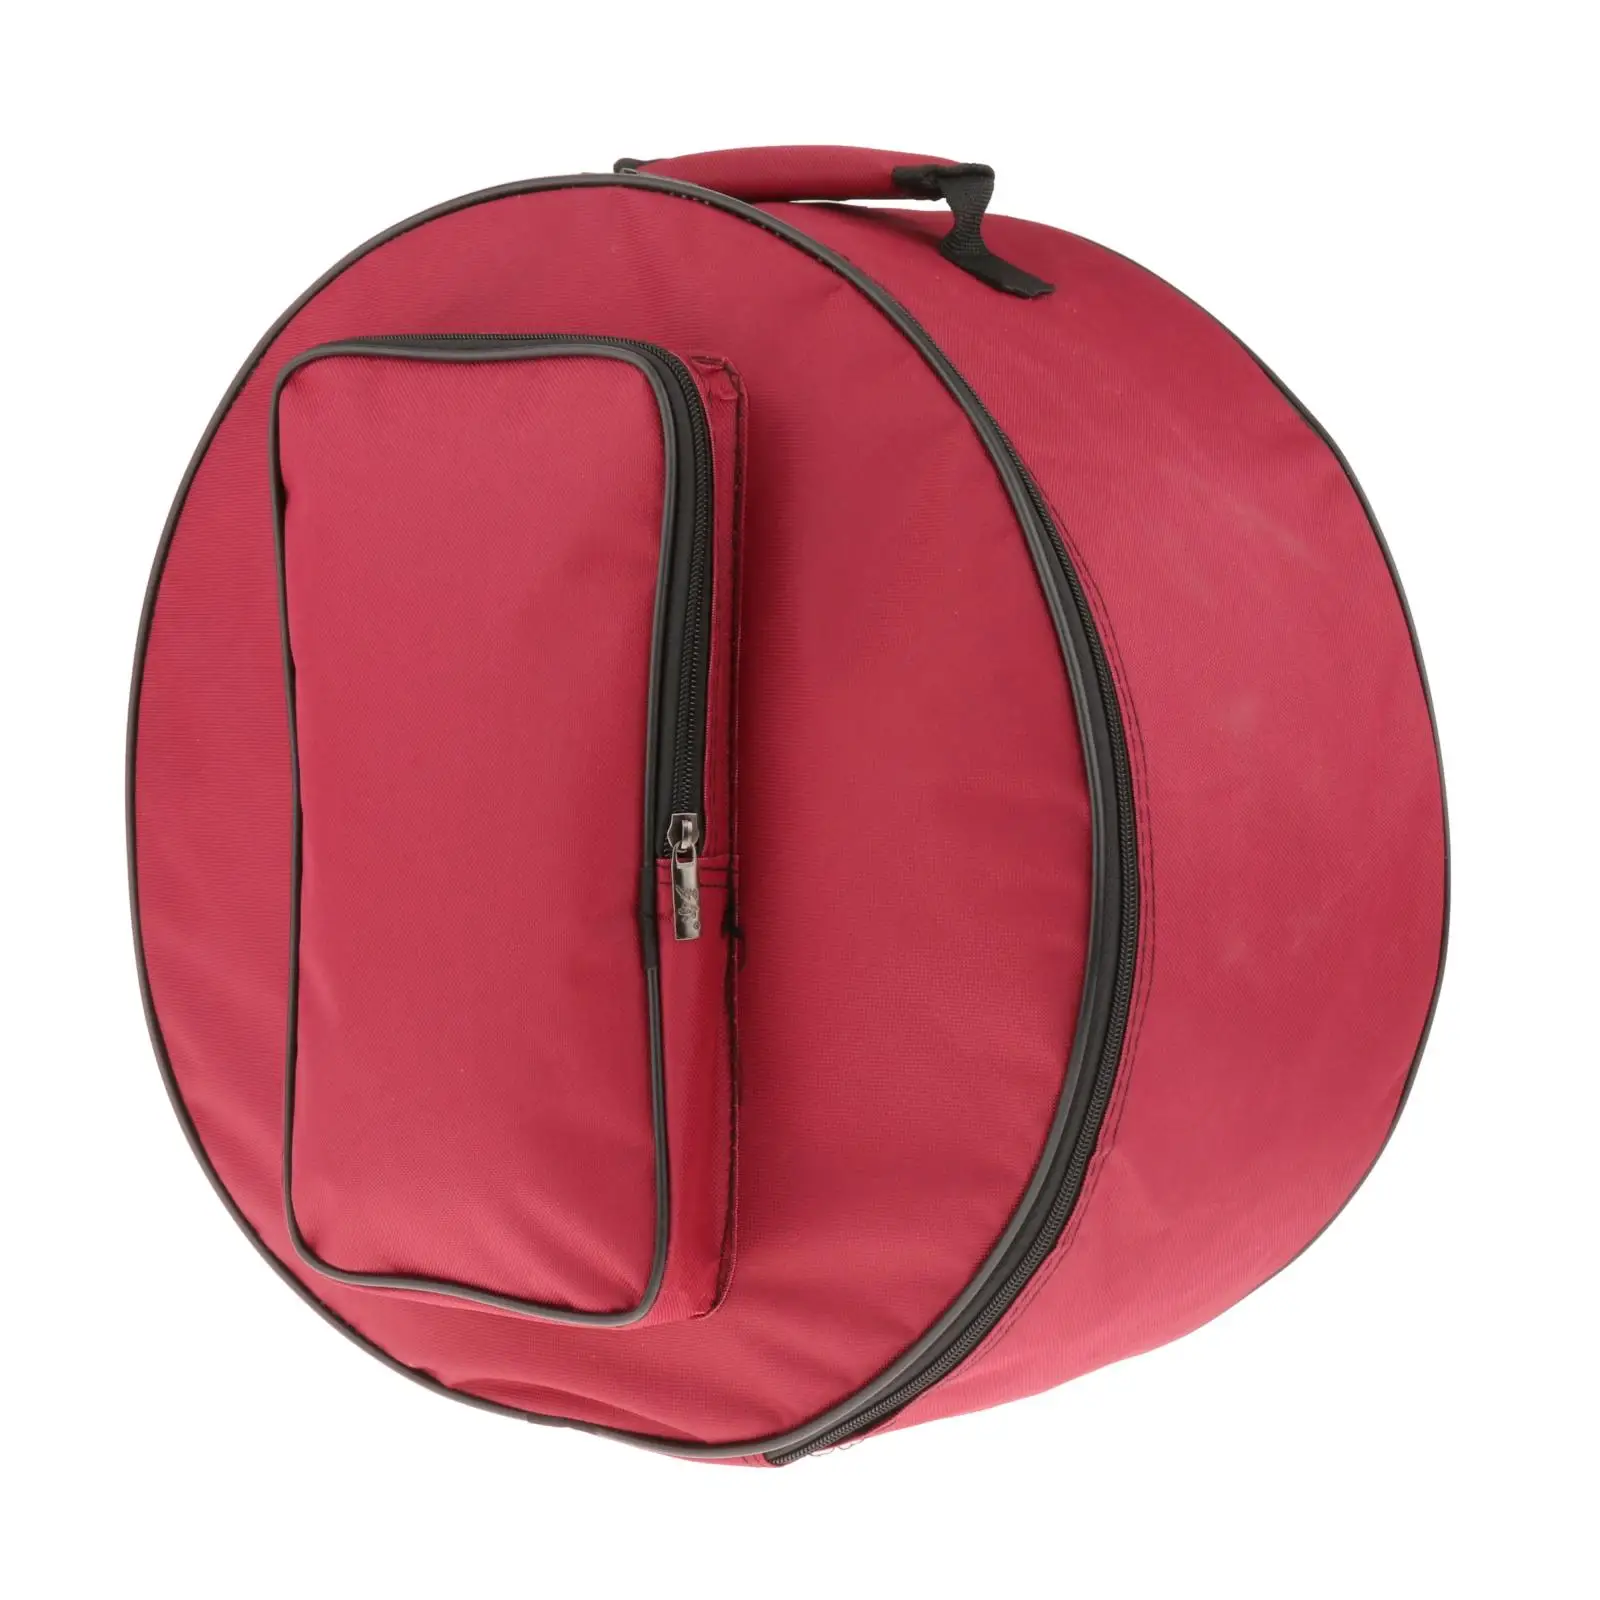 Snare Drum Bag Backpack Case Storage Bag with Shoulder Strap Outside Pockets Instrument Parts